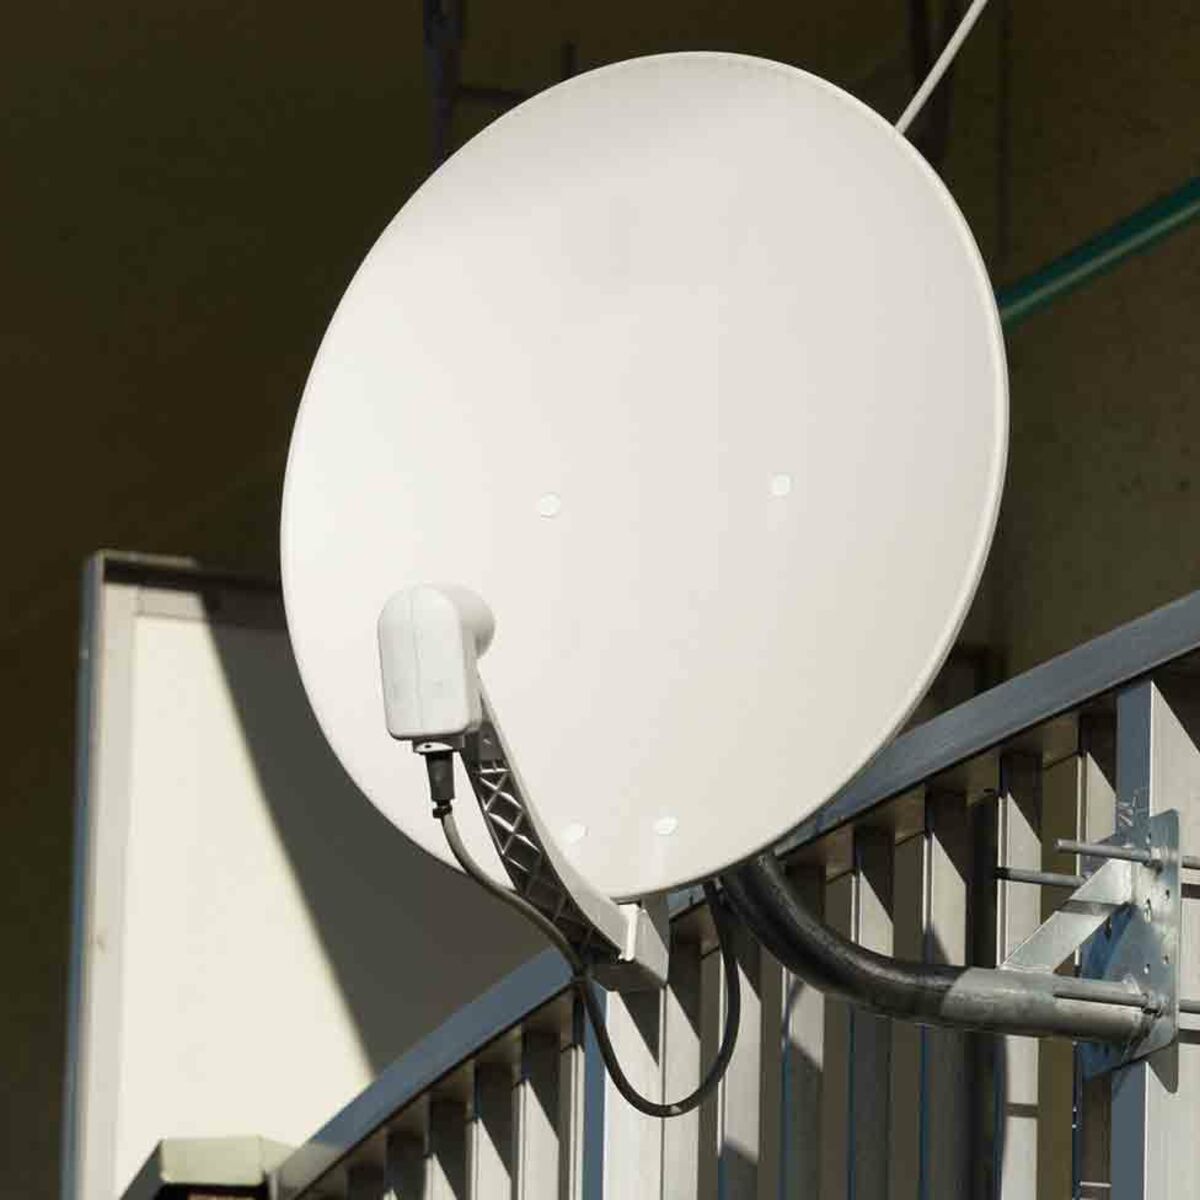 Comment améliorer le signal d'une antenne de télévision ?